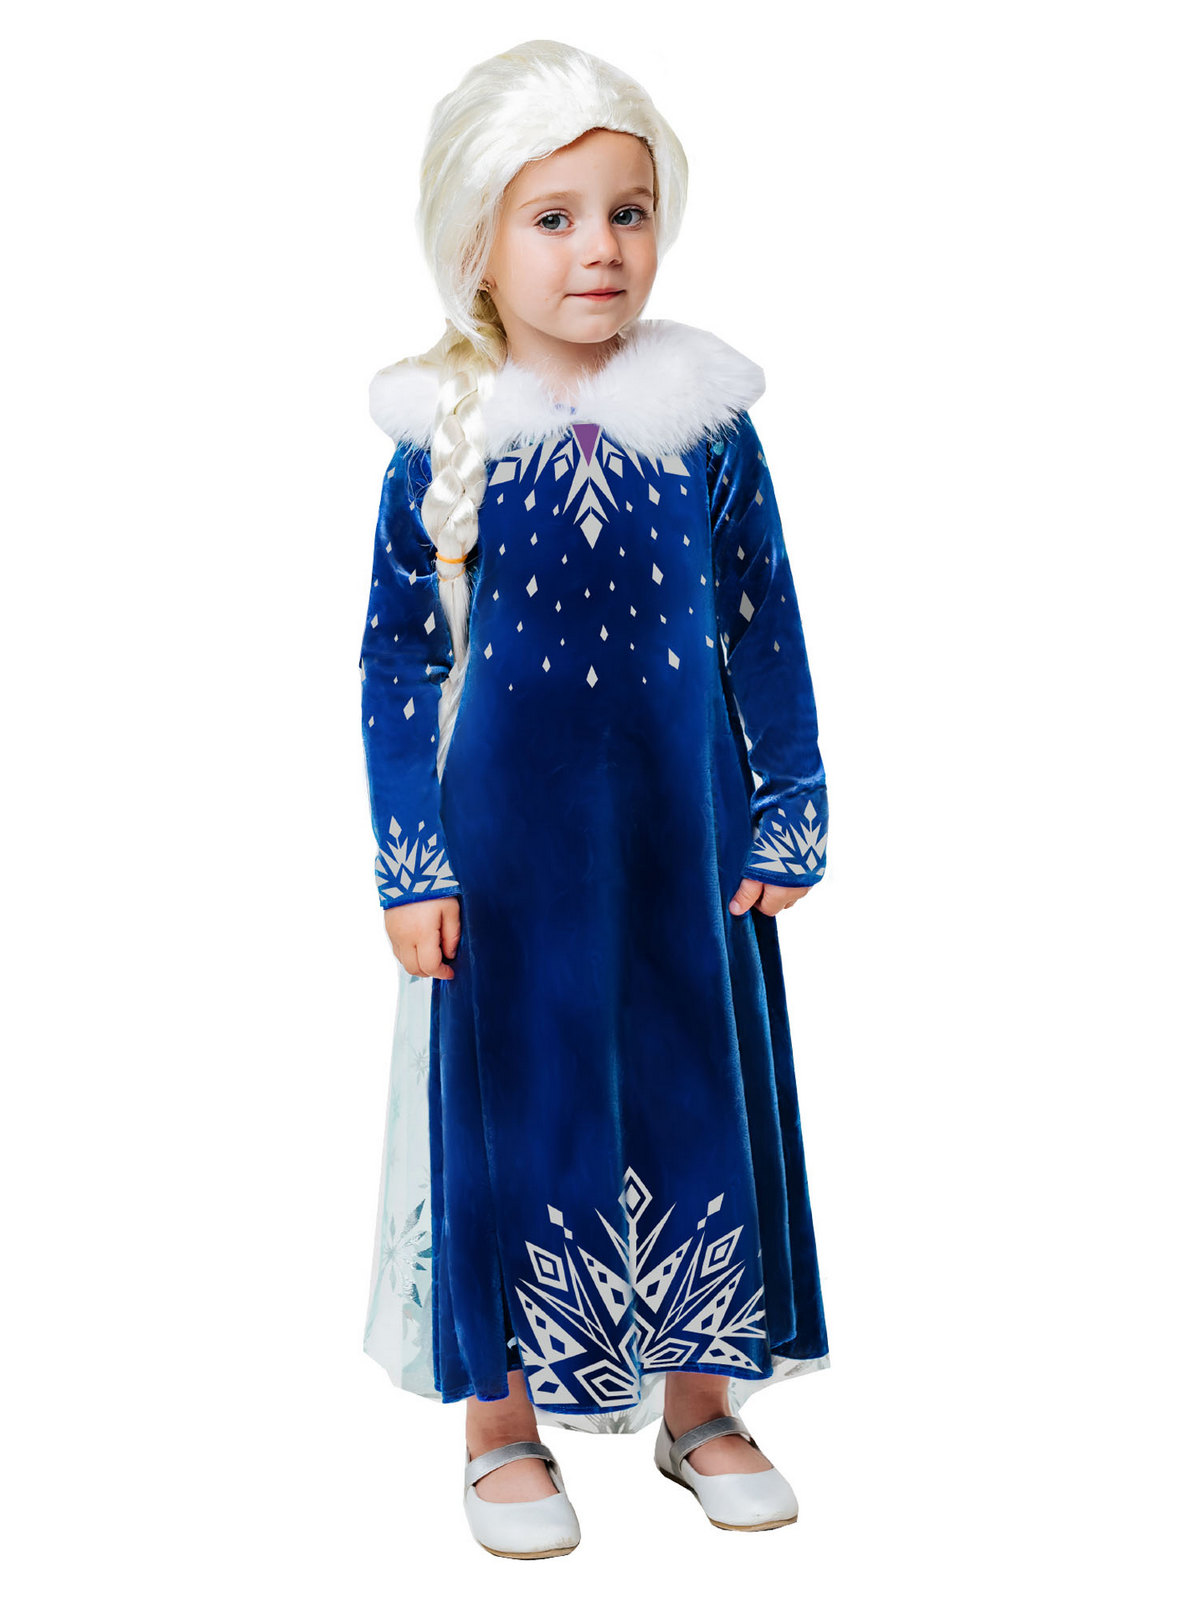 Карнавальный костюм Batik 9004 к-21 Эльза зимнее платье, синий, 104 карнавальный костюм batik 9004 к 21 эльза зимнее платье синий 122